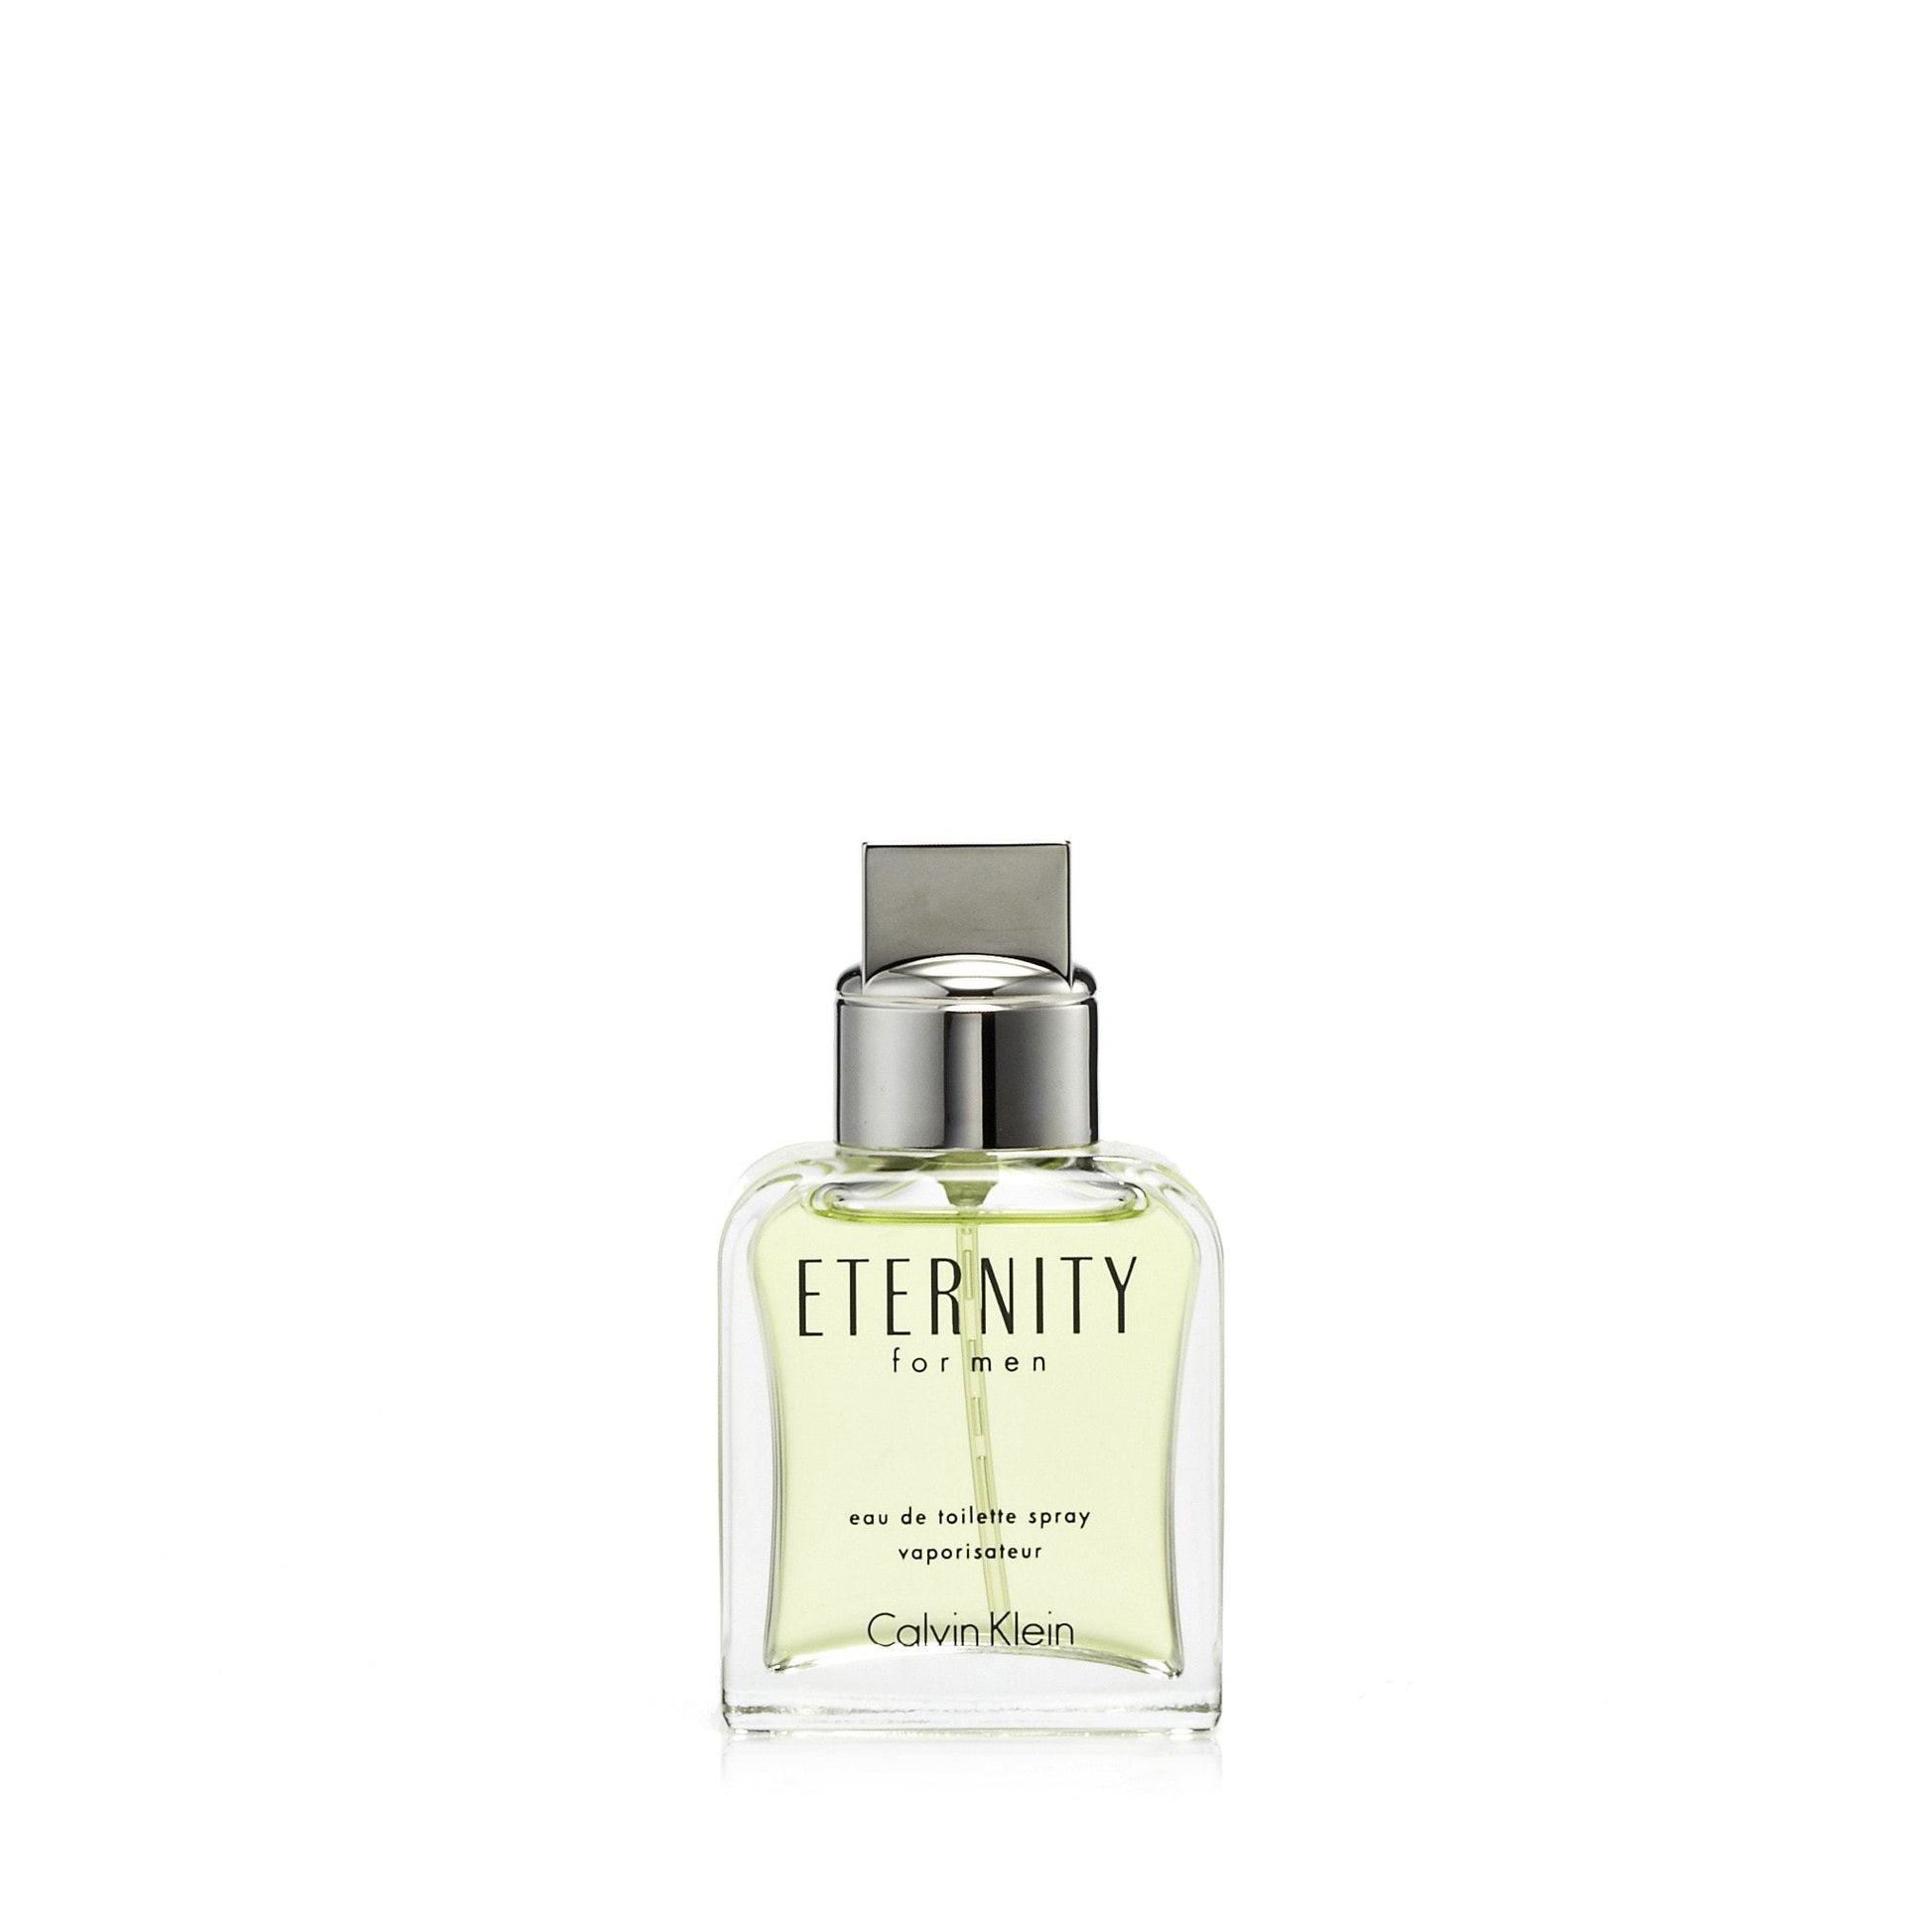 Eternity Eau de Toilette Spray for Men by Calvin Klein, Product image 3